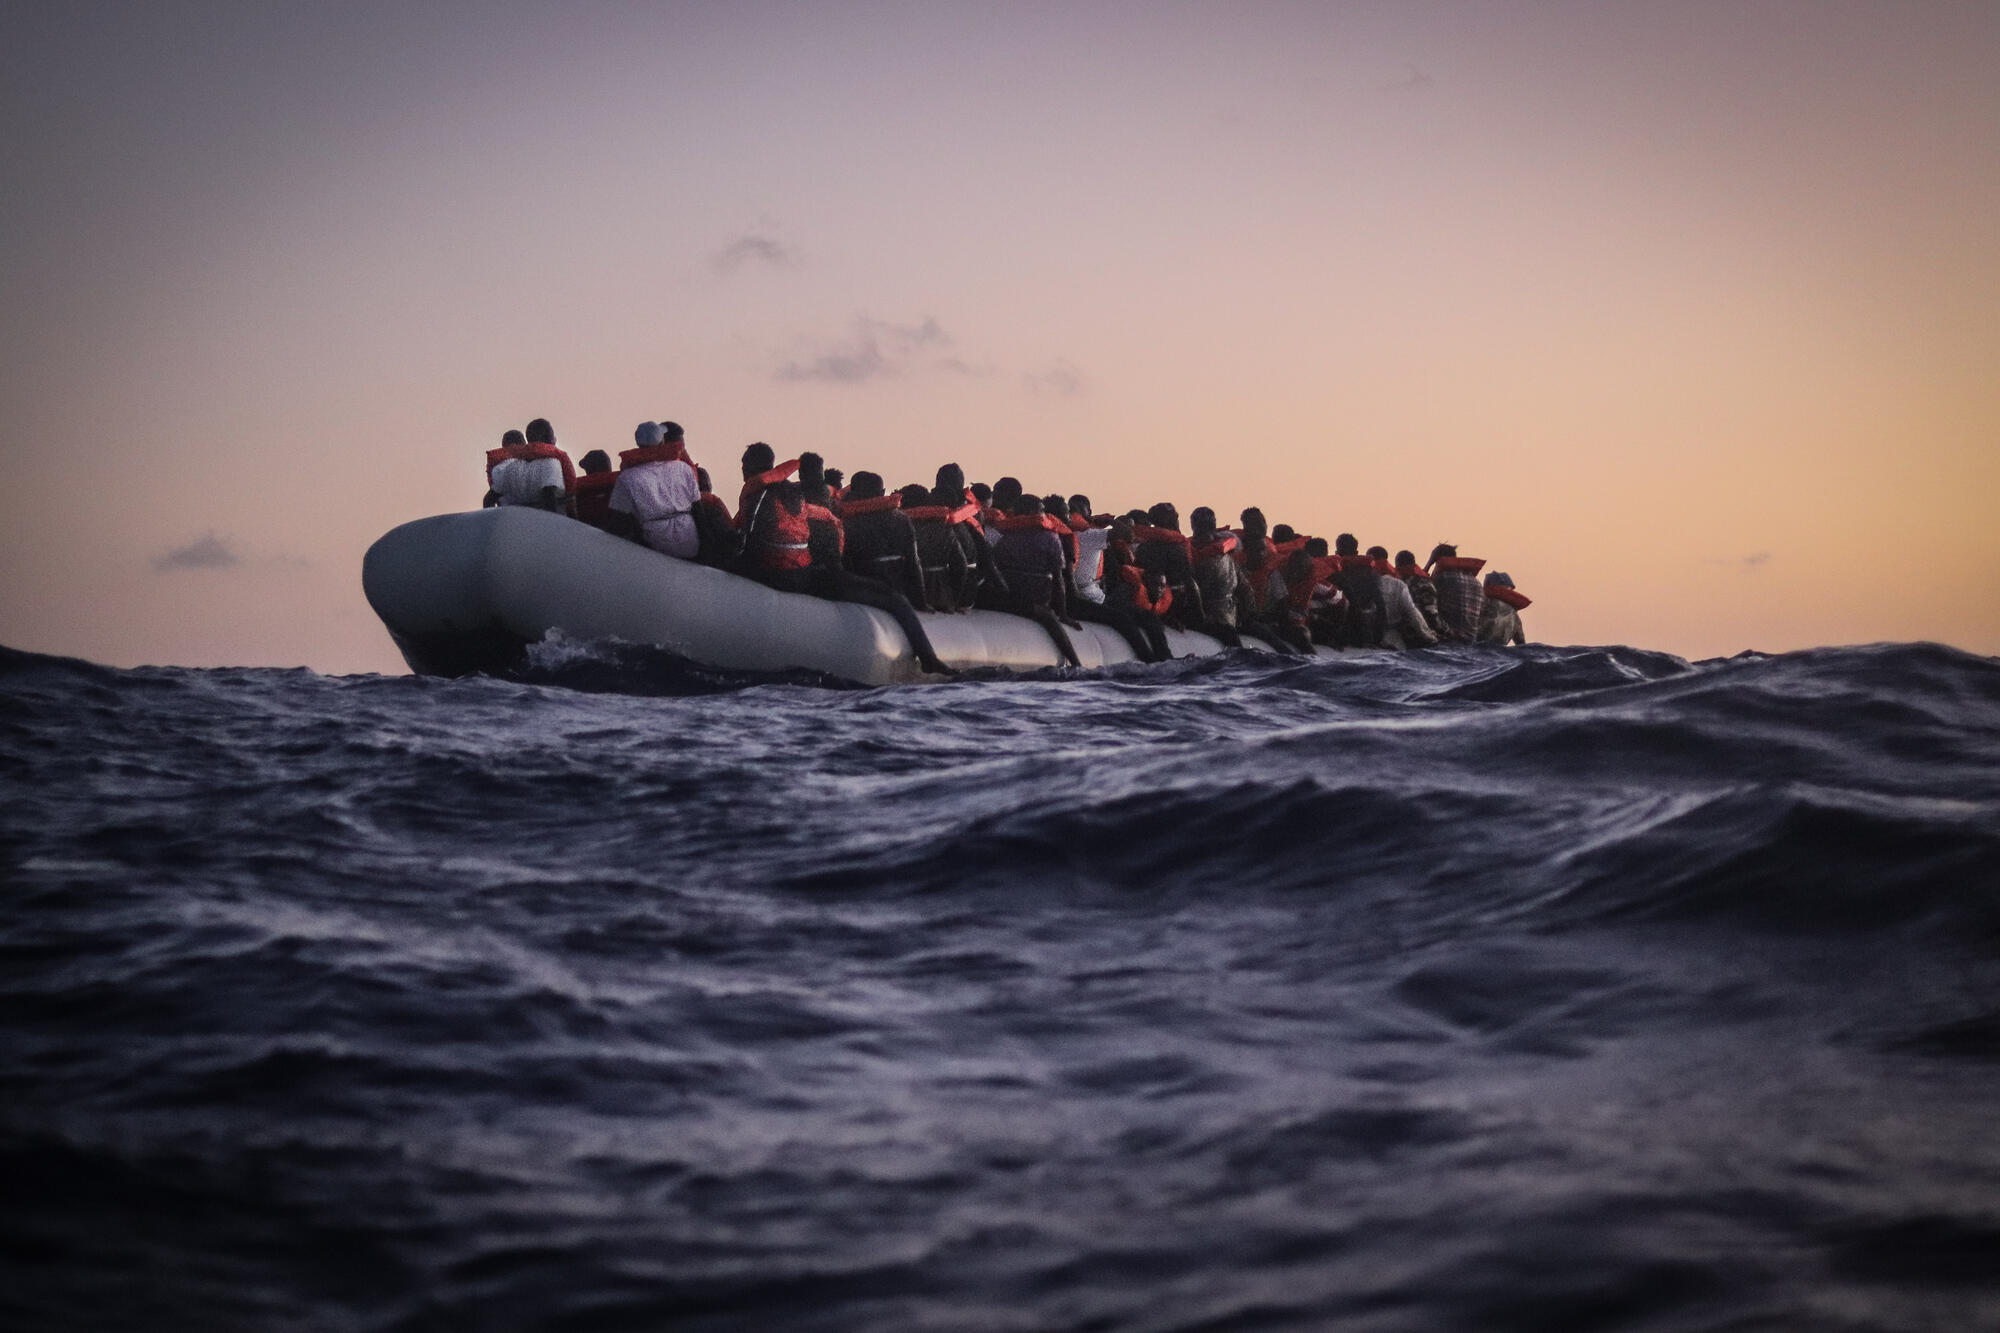 Ιταλία: Απόβαση 1000 παράτυπων μεταναστών το τελευταίο εικοσιτετράωρο